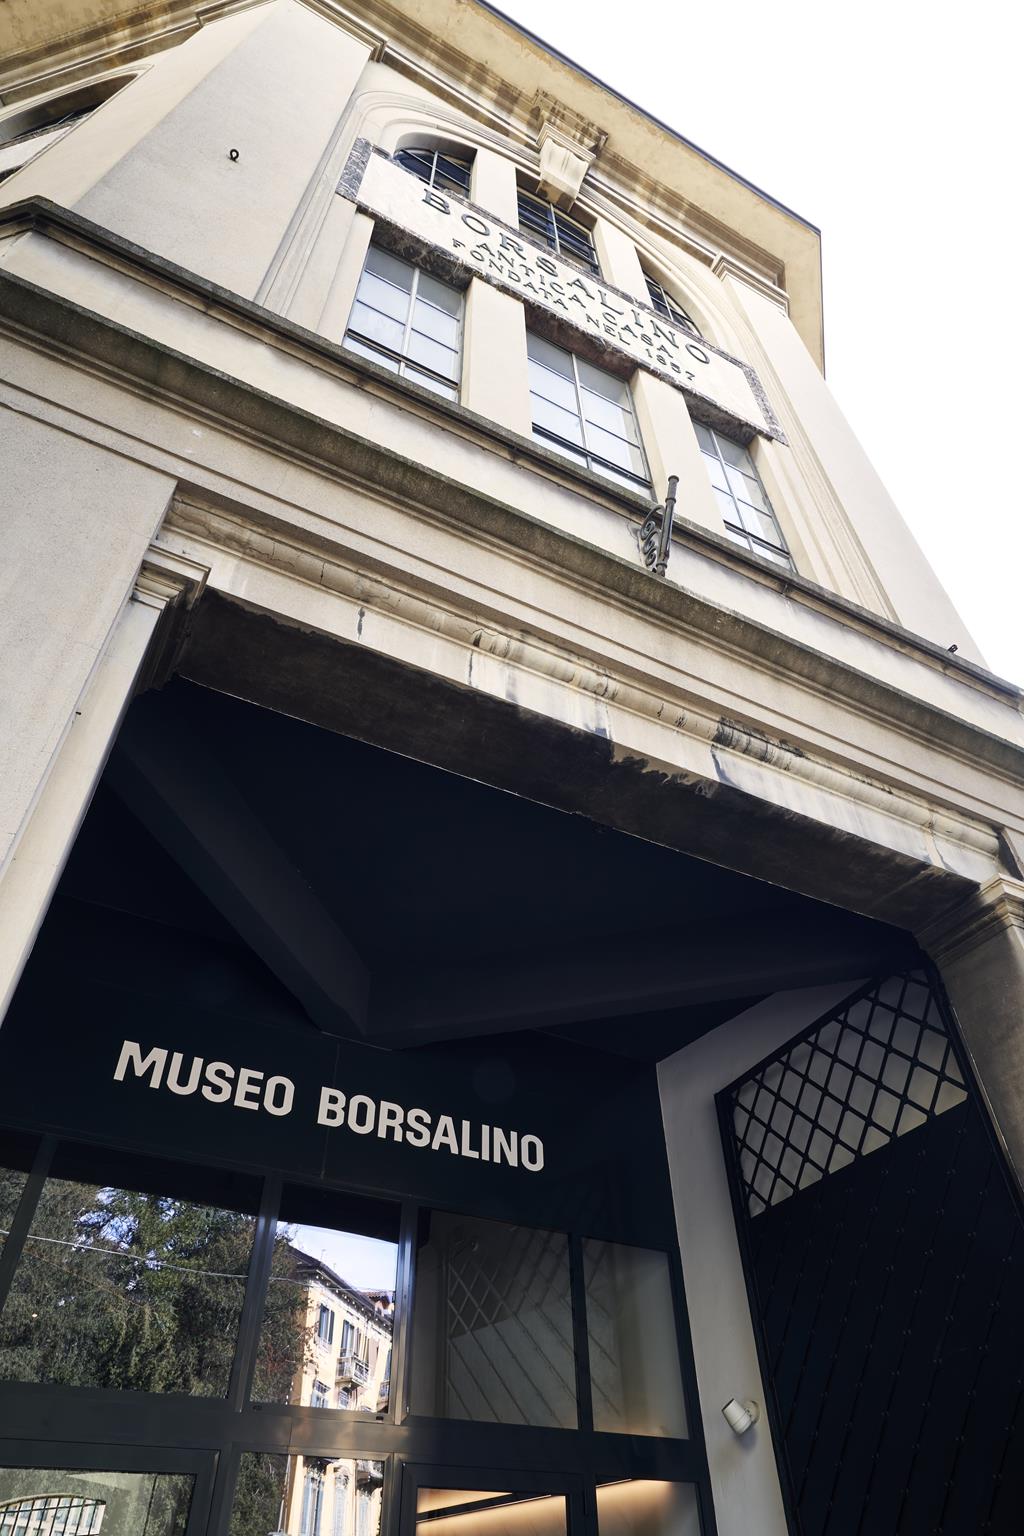 Borsalino Museum